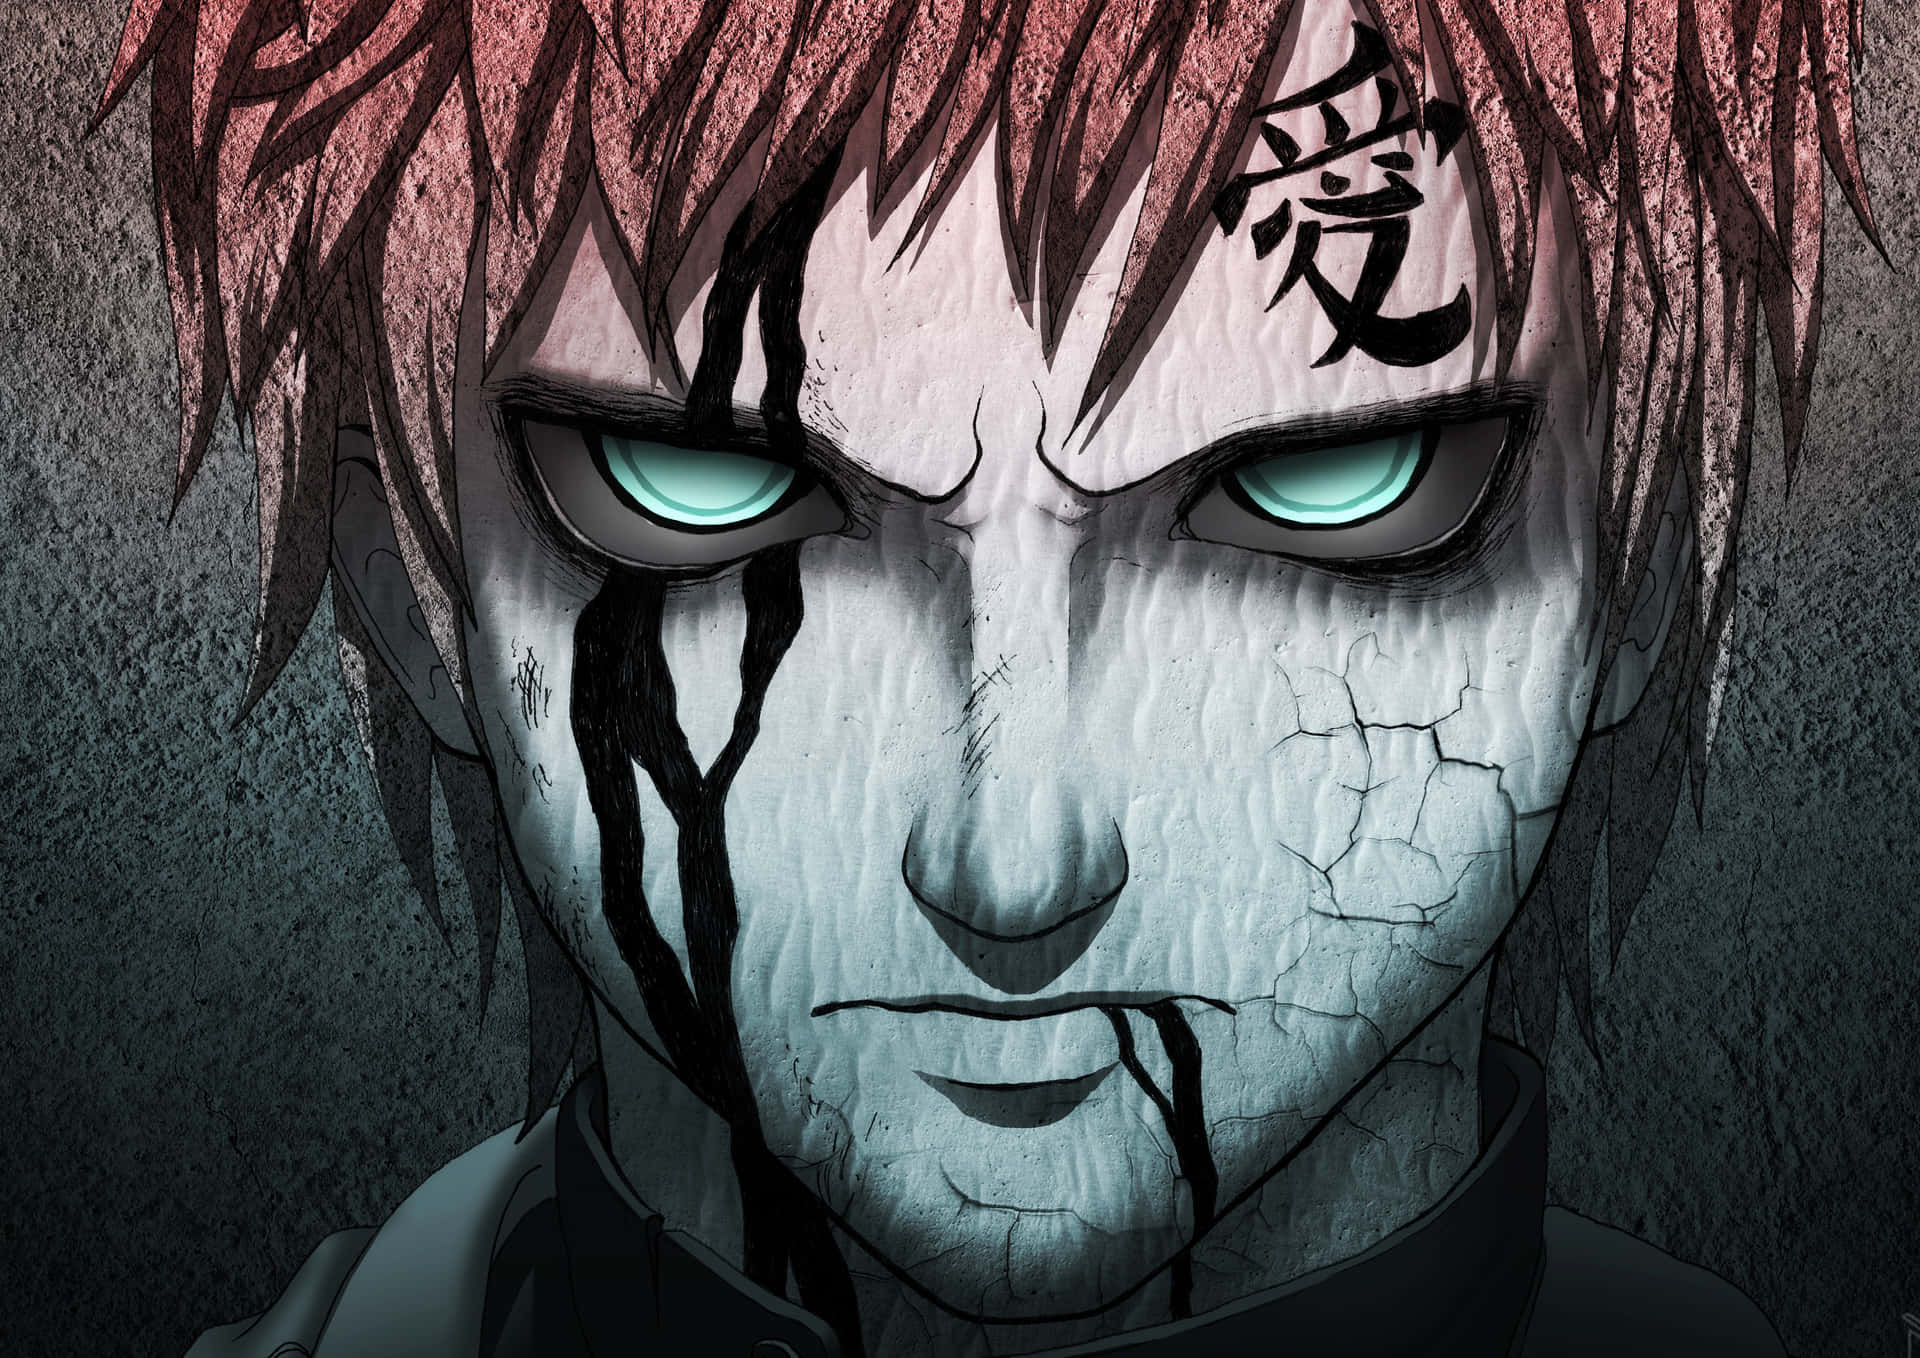 Den Femte Kazekage fra Sunagakure, Gaara, kæmper i Den Fjerde Shinobi-krig fra anime-serien Naruto. Wallpaper